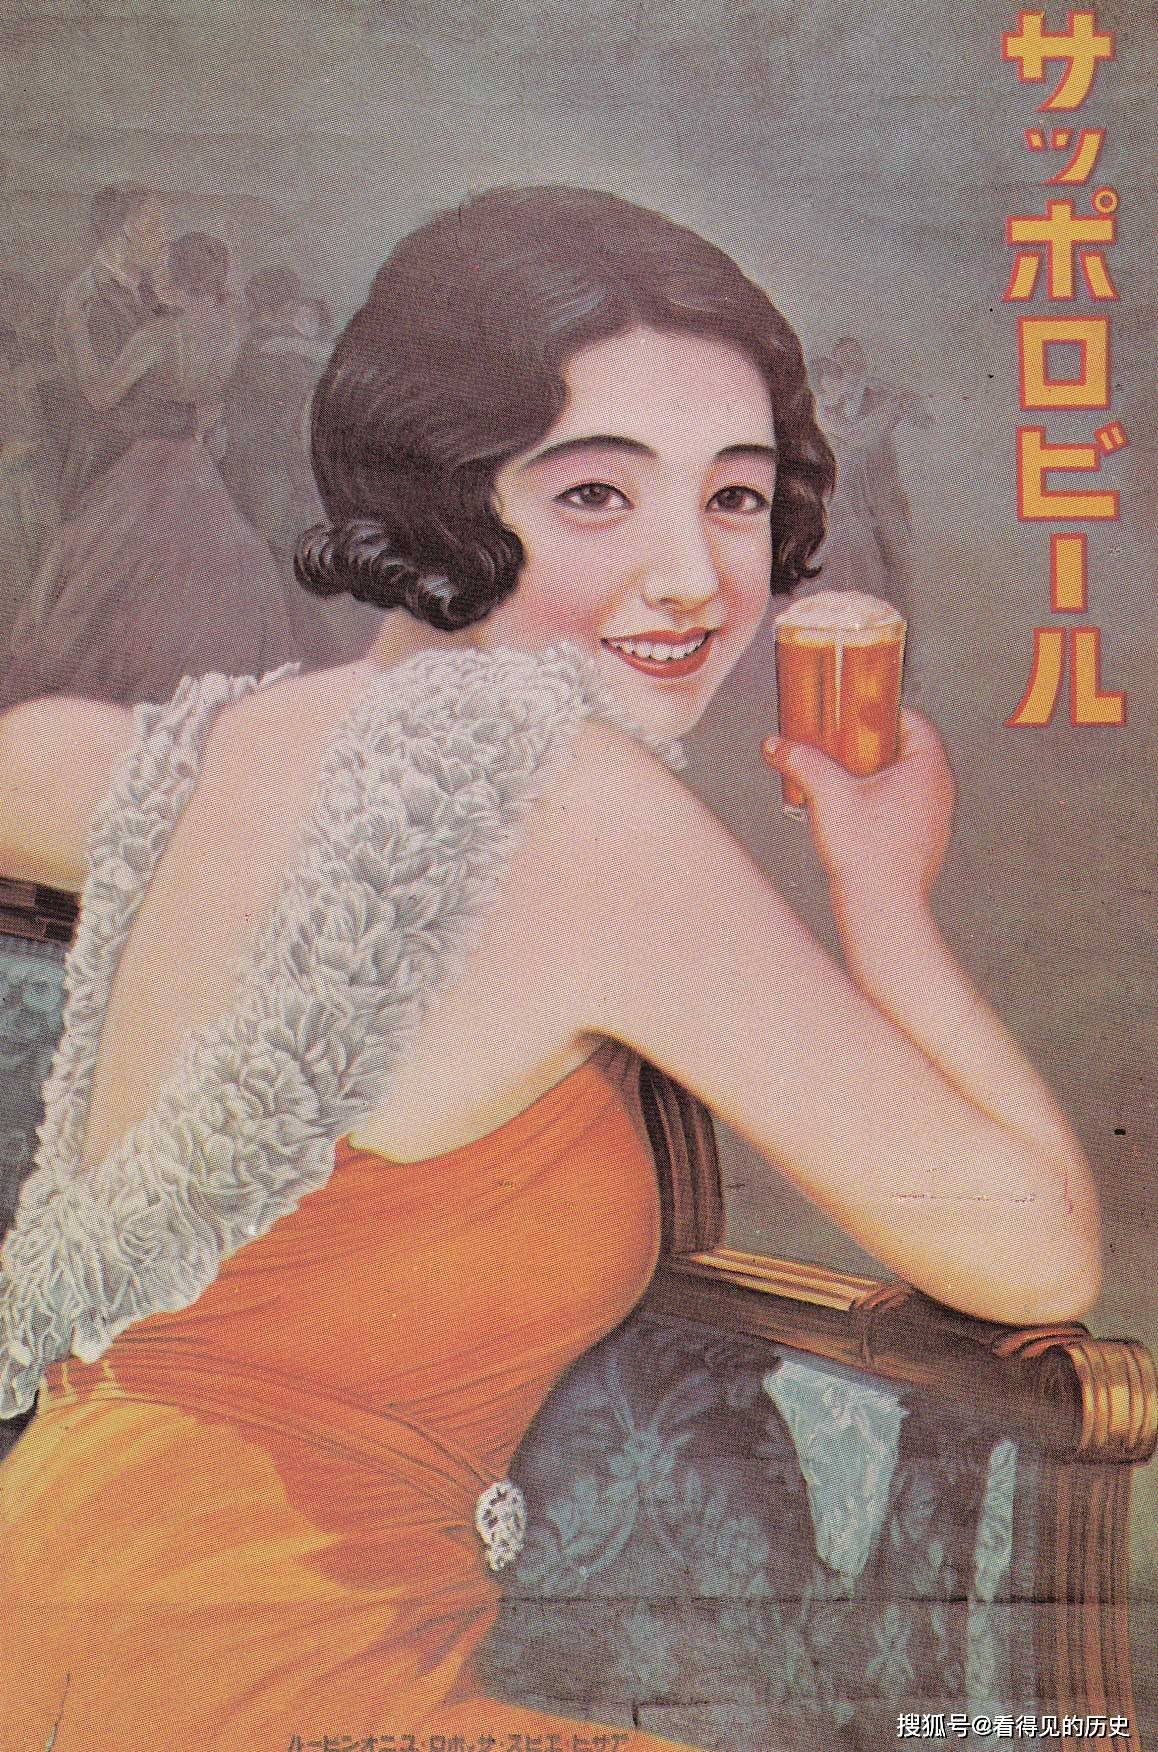 二战前日本的啤酒广告 大打美女牌